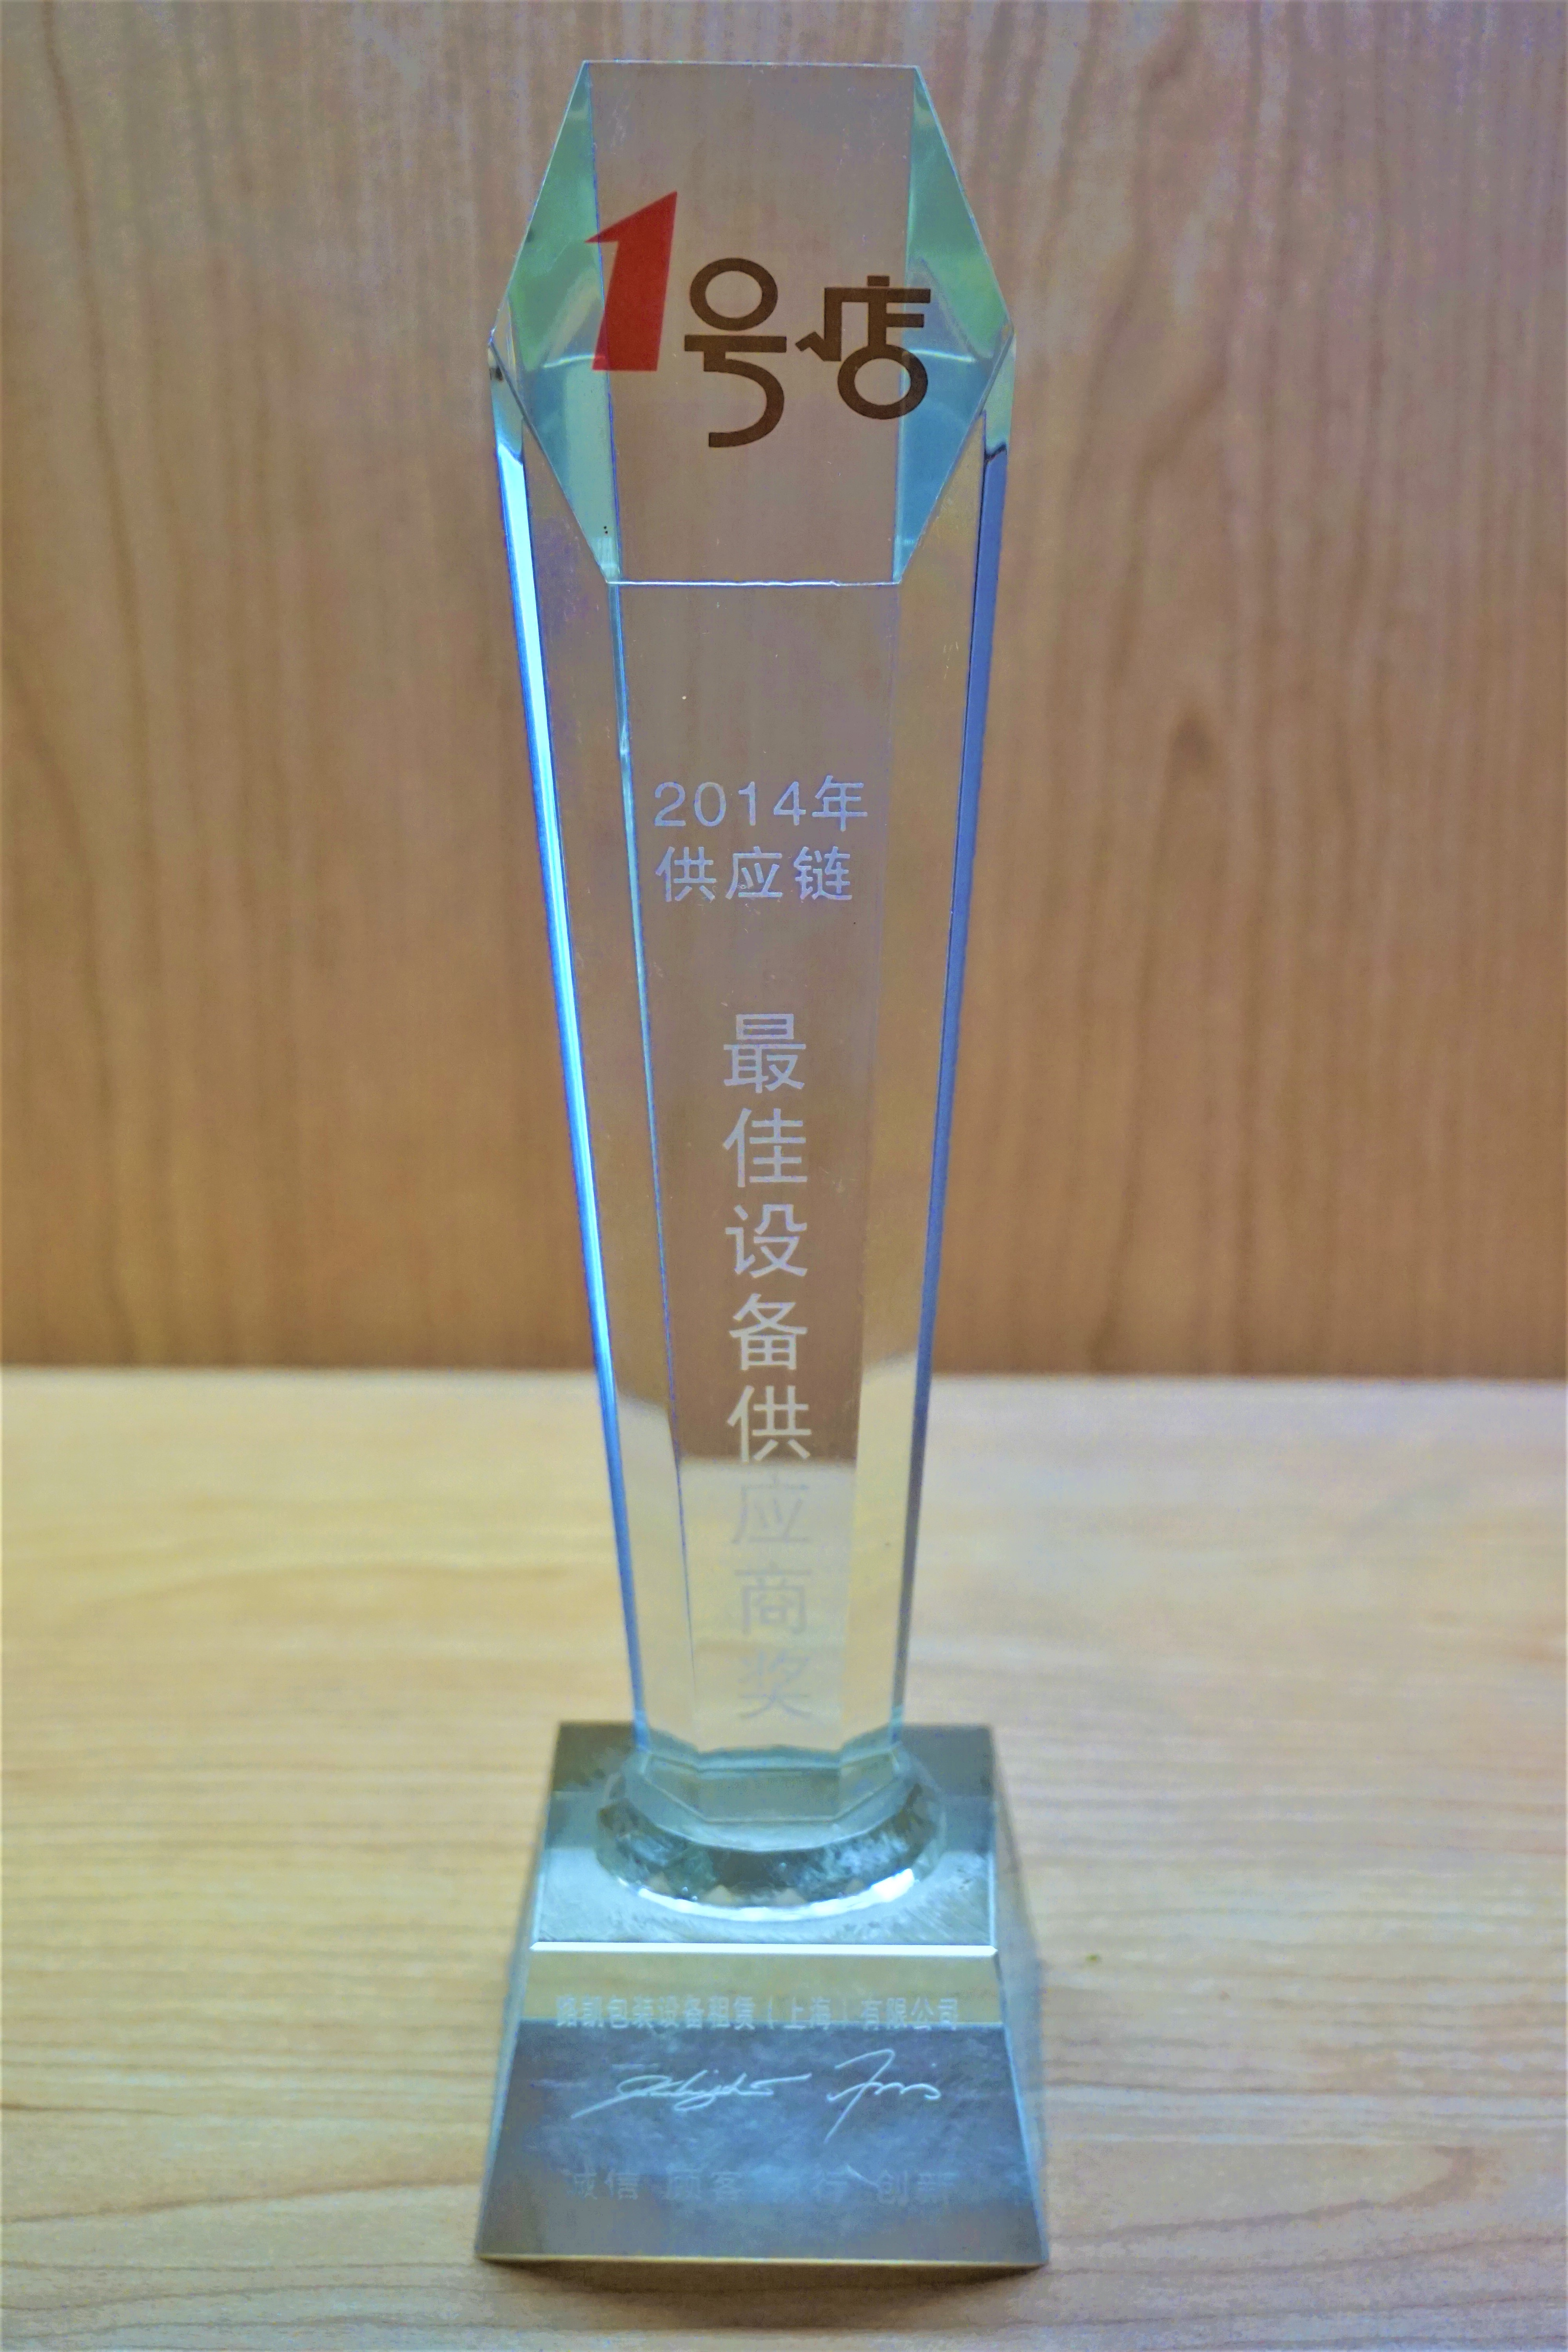 2014最佳设备供应商奖-1号店.JPG